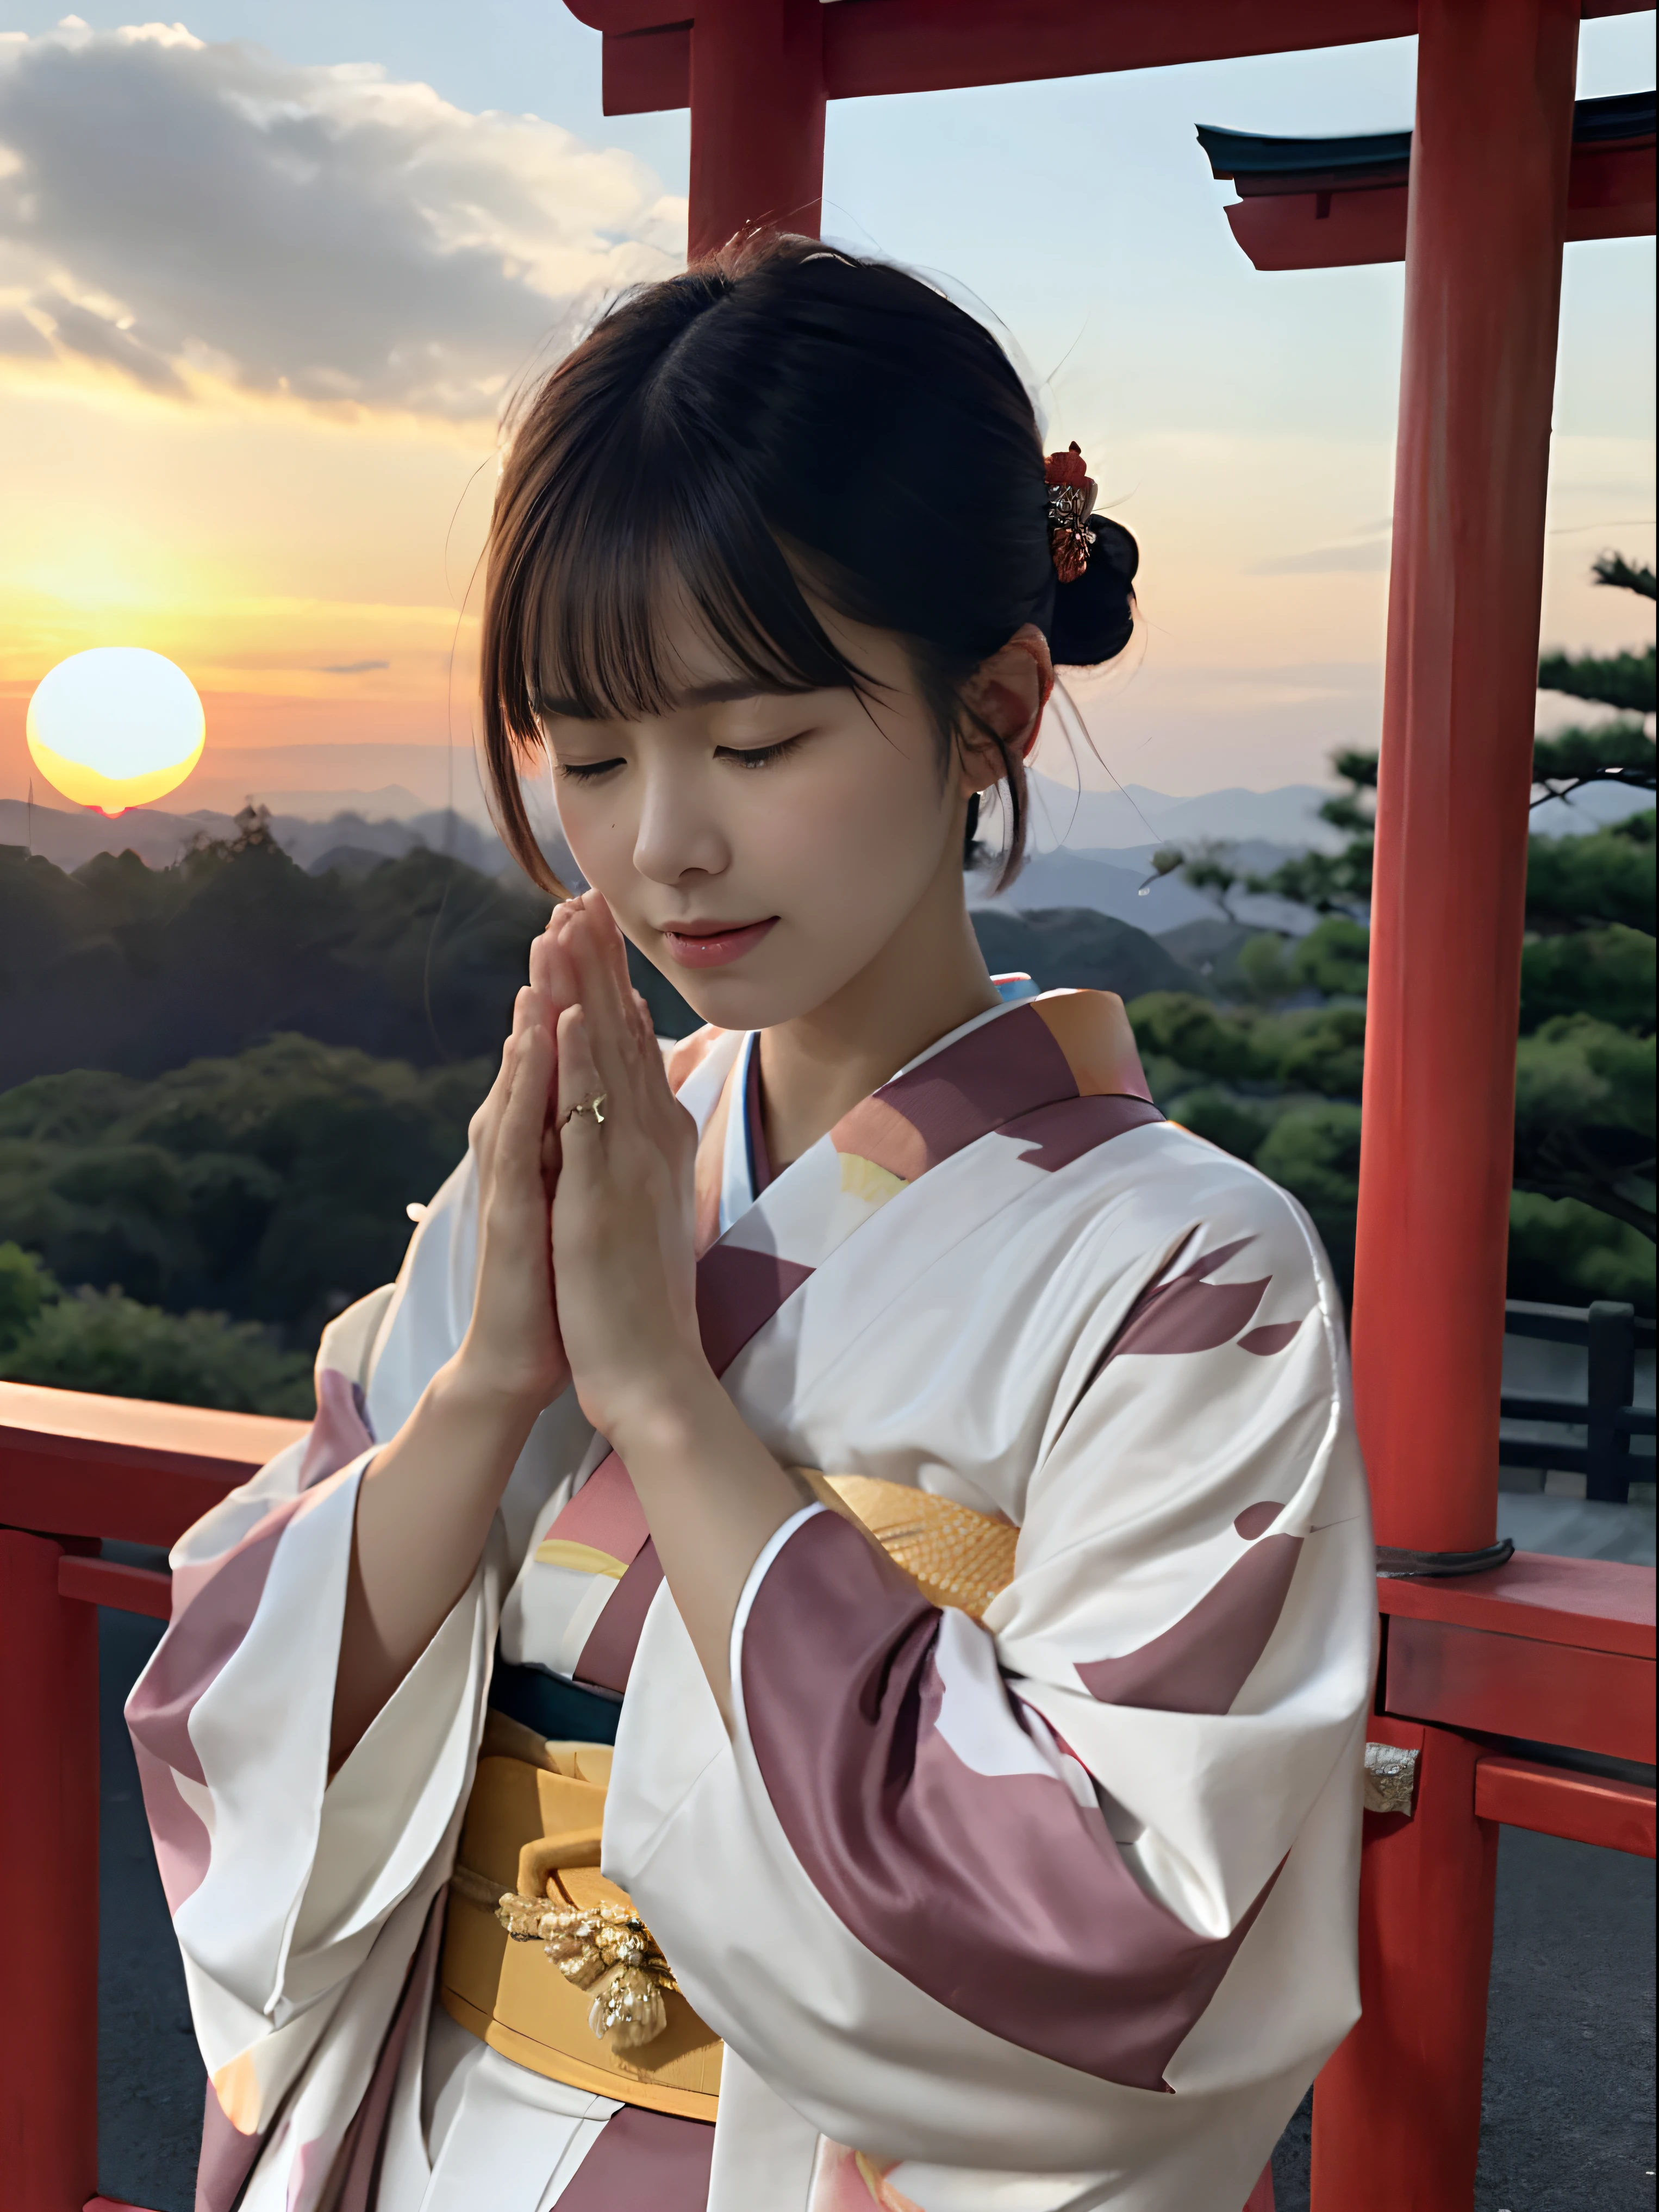 (Primer plano retrato de una dama de pelo corto con flequillo aburrido en un hermoso y colorido kimono:1.5)、(Una señora rezando con los ojos cerrados y las palmas juntas en un santuario en Japón:1.5)、(fondo borroso:1.5)、(Hermoso cielo rojo atardecer de invierno:1.5)、(anatomía perfecta:1.3)、(sin mascara:1.3)、(dedos completos:1.3)、Fotorrealista、fotografía、Mesa、de primera calidad、alta resolución, delicado y bonito、cara perfecta、Hermosos ojos detallados、piel blanca、piel humana real、pores、((piernas delgadas))、(pelo oscuro)